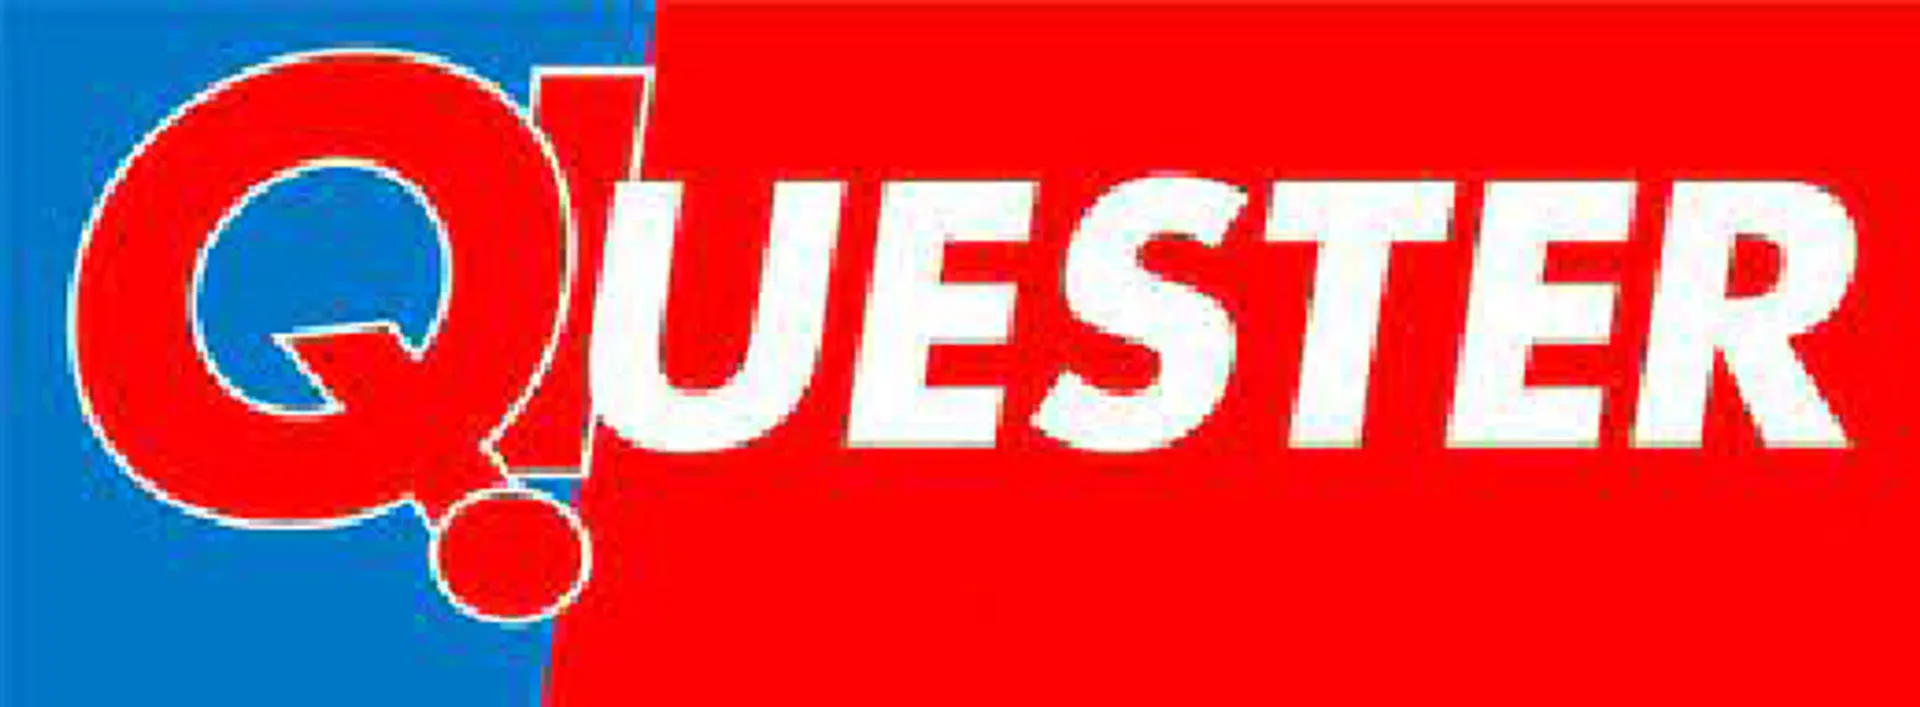 QUESTER logo die aktuell Flugblatt